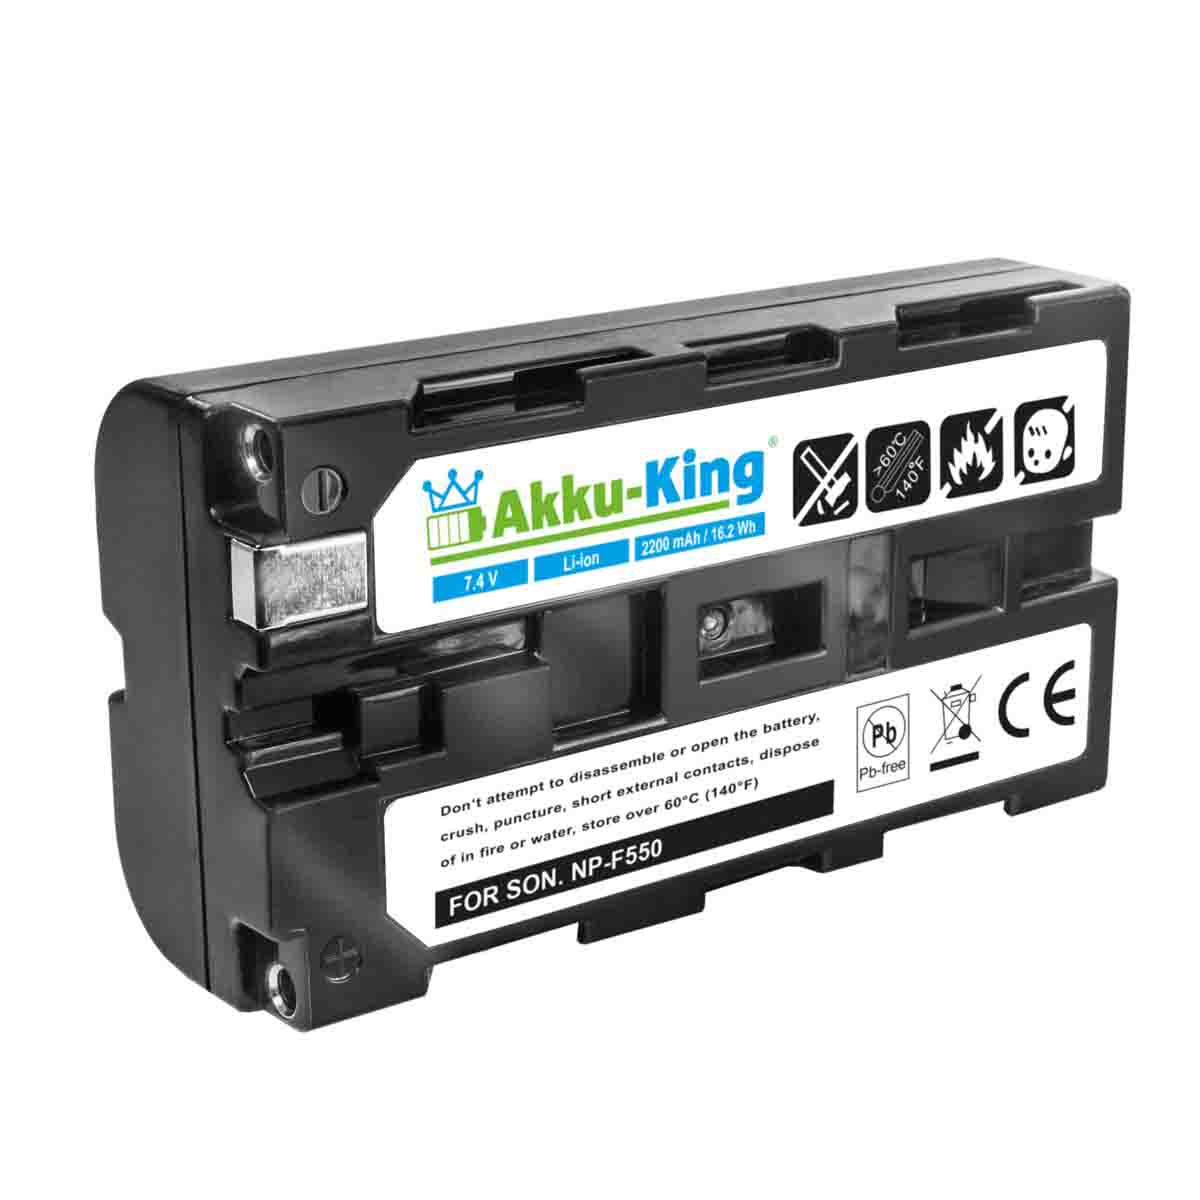 AKKU-KING Akku kompatibel mit Volt, 7.4 Futaba 2200mAh LT2F2200 Li-Ion Geräte-Akku